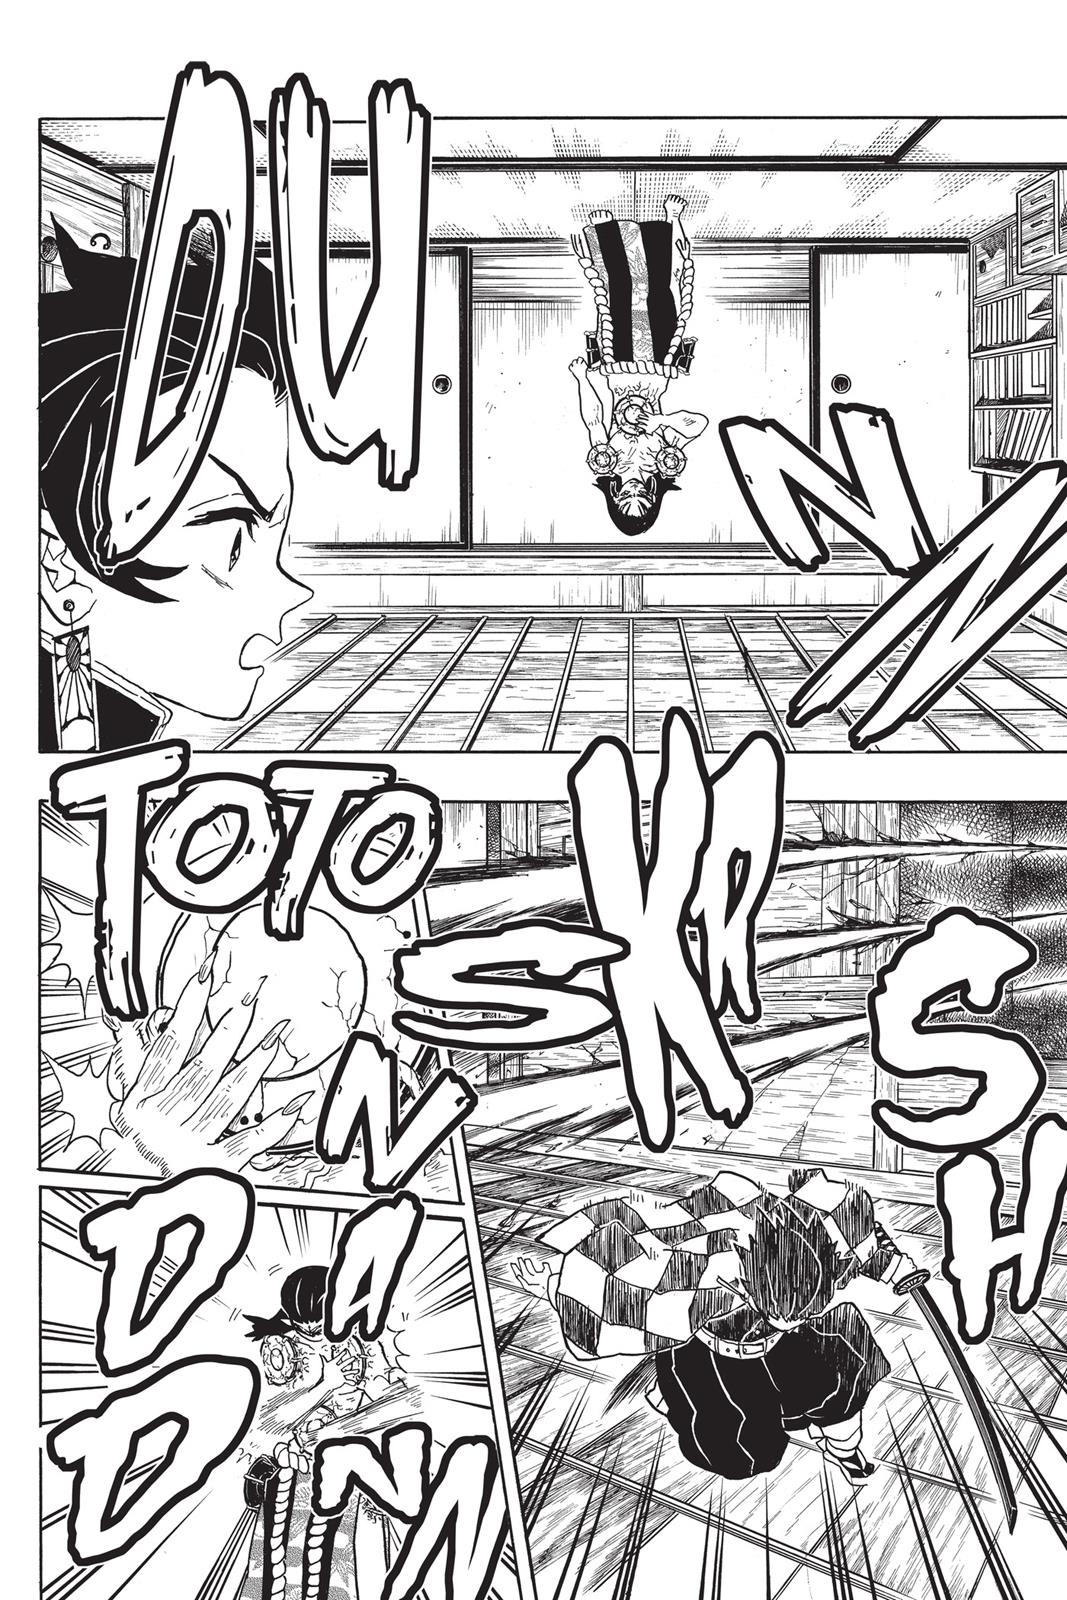 Demon Slayer Manga Manga Chapter - 24 - image 11